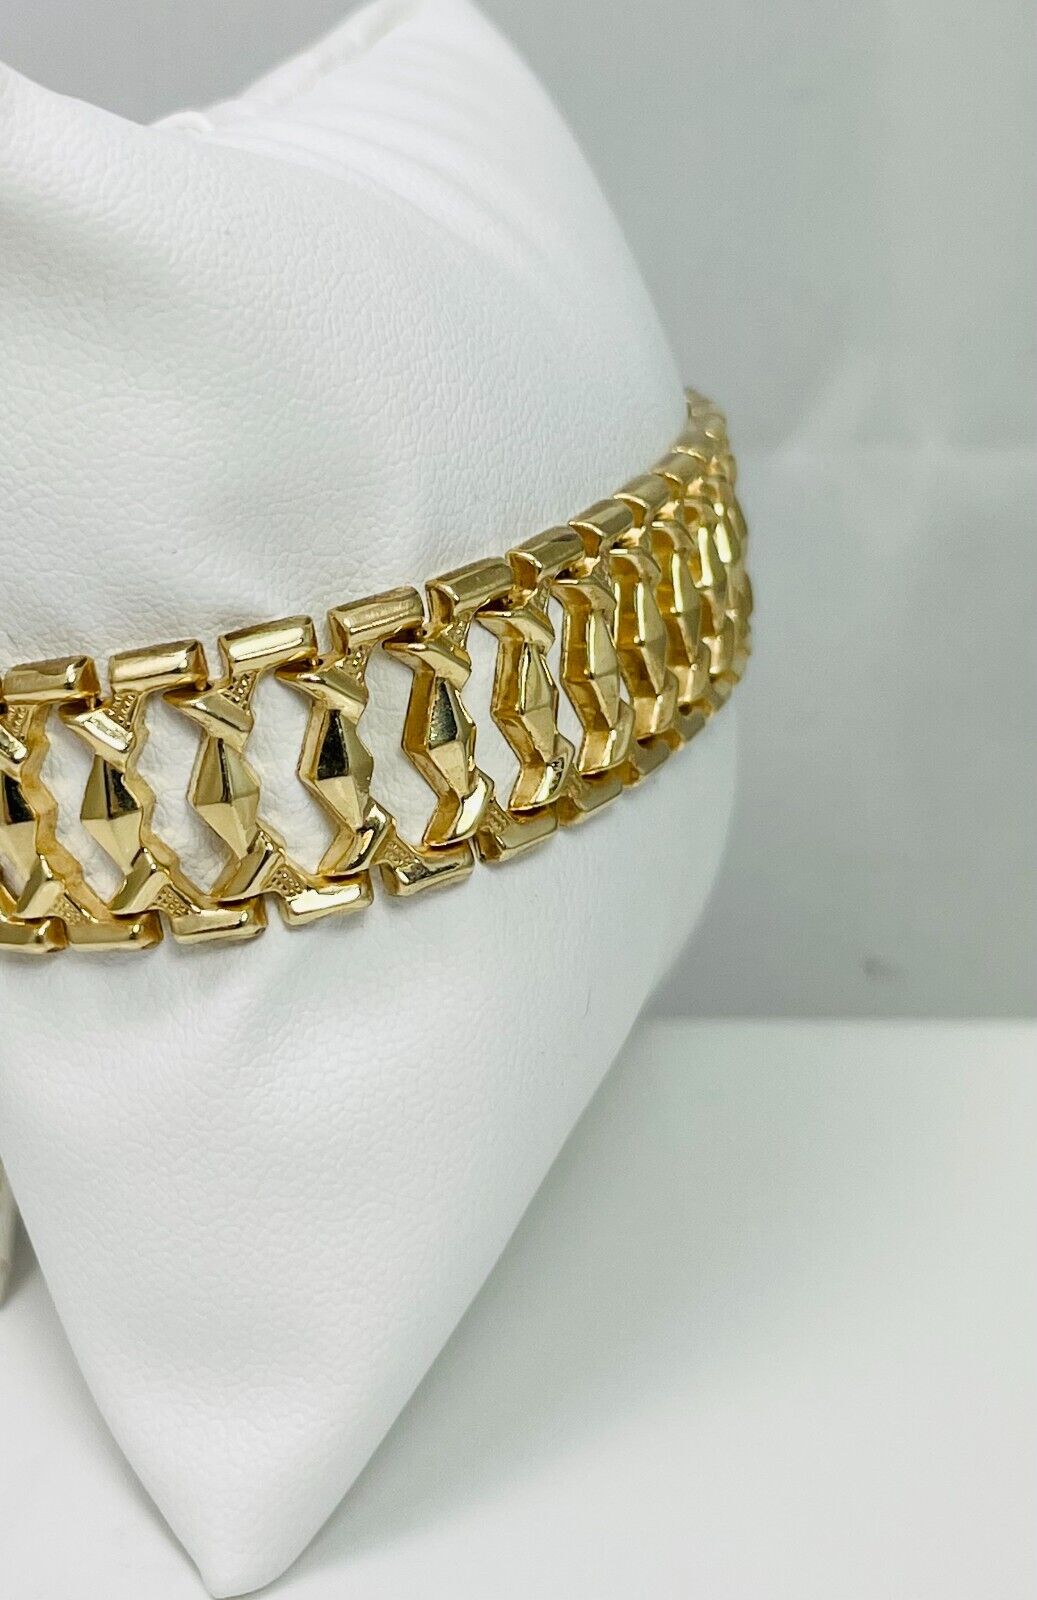 7" 10k Hollow Yellow Gold Fancy Link Bracelet - Italy